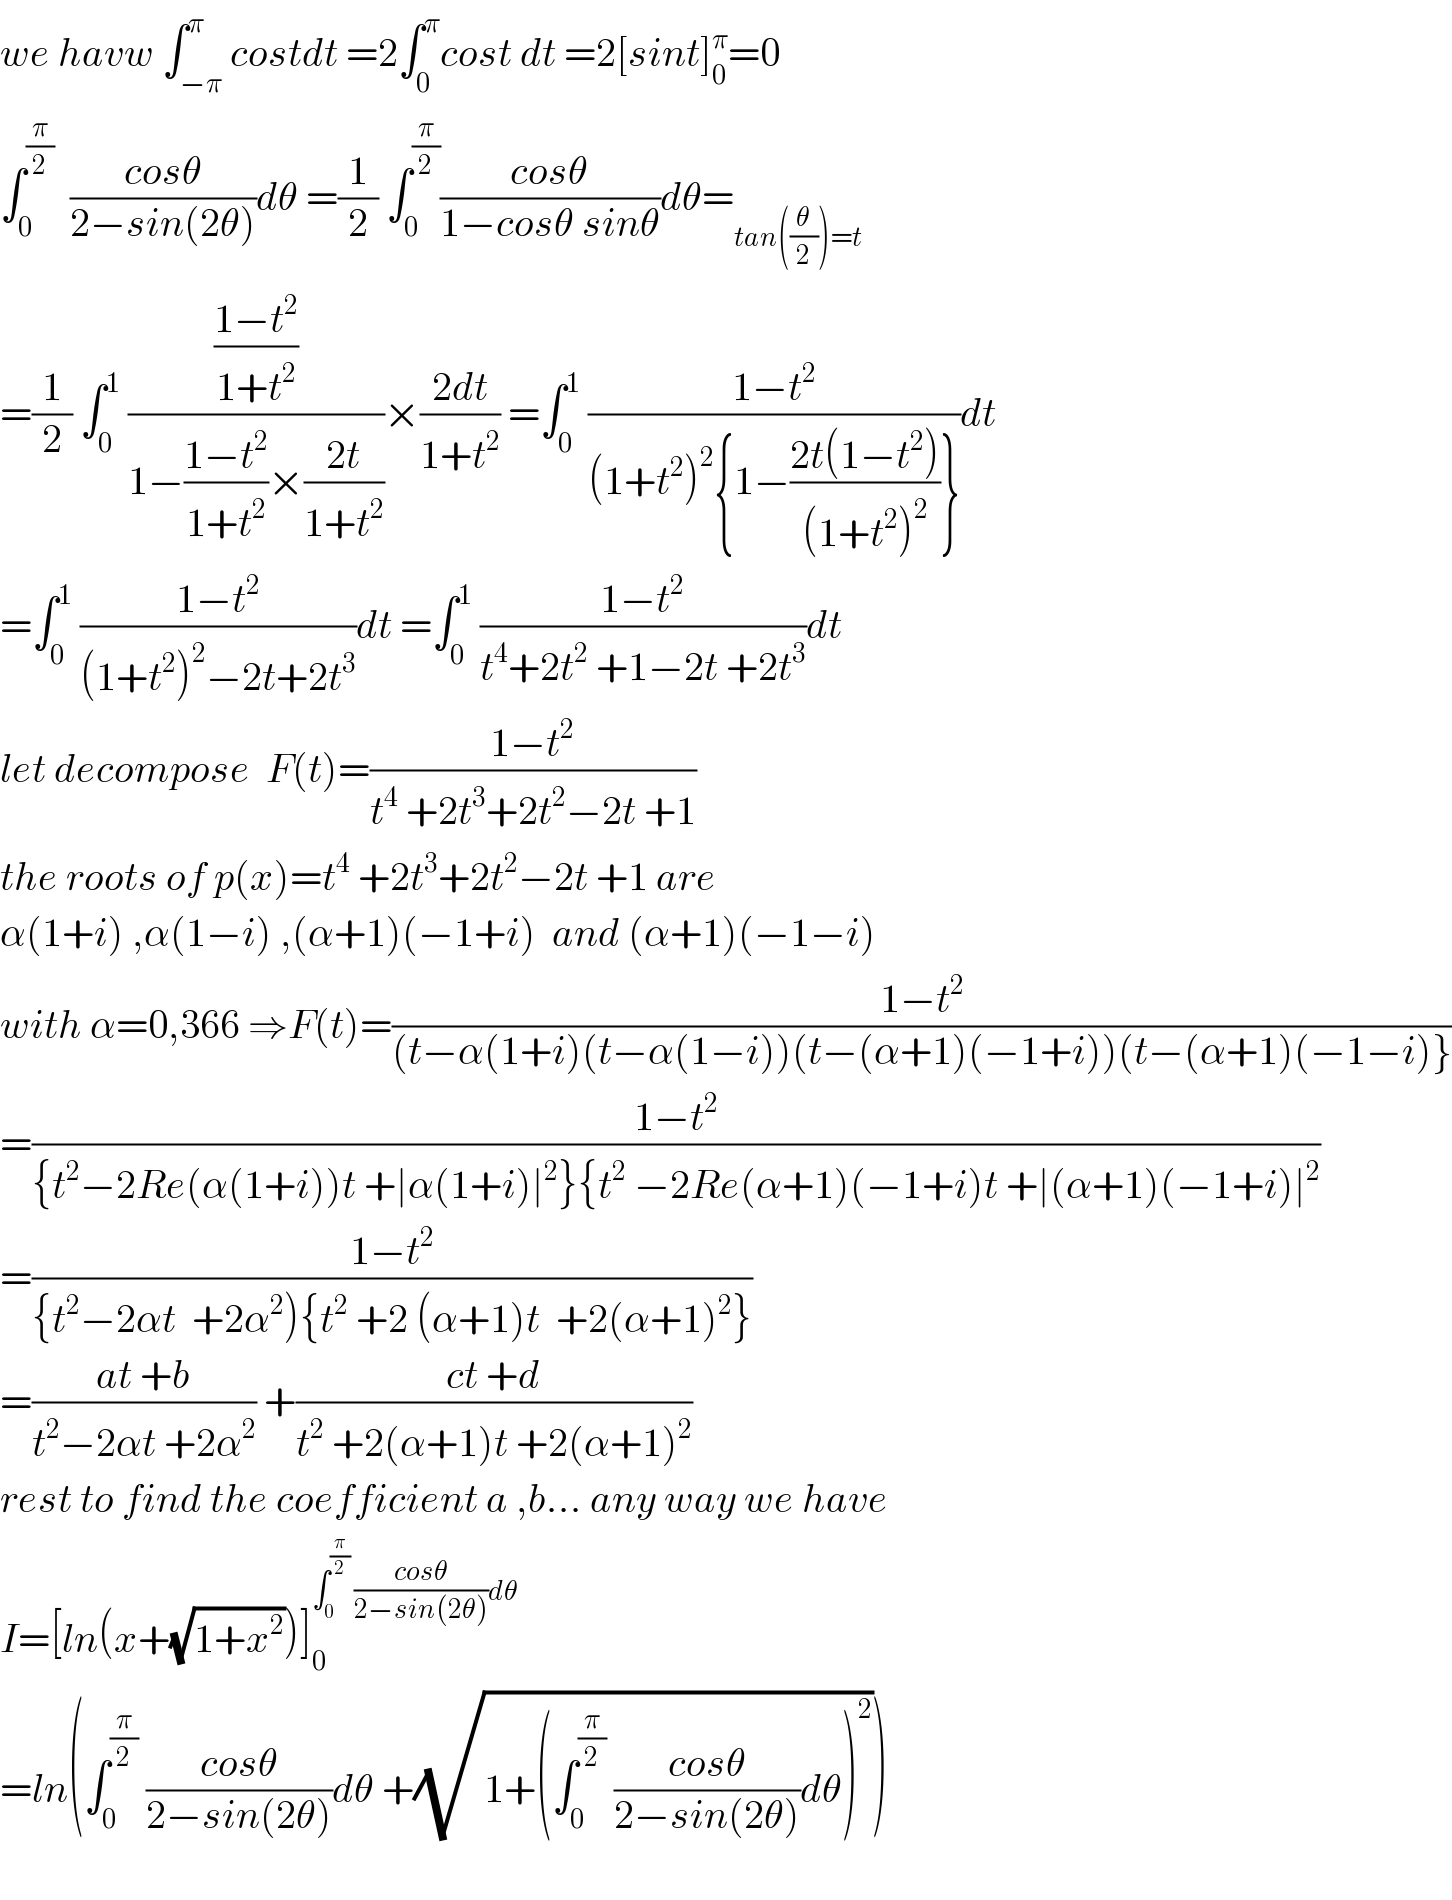 we havw ∫_(−π) ^π costdt =2∫_0 ^π cost dt =2[sint]_0 ^π =0  ∫_0 ^(π/2)   ((cosθ)/(2−sin(2θ)))dθ =(1/2) ∫_0 ^(π/2) ((cosθ)/(1−cosθ sinθ))dθ=_(tan((θ/2))=t)   =(1/2) ∫_0 ^1  (((1−t^2 )/(1+t^2 ))/(1−((1−t^2 )/(1+t^2 ))×((2t)/(1+t^2 ))))×((2dt)/(1+t^2 )) =∫_0 ^1  ((1−t^2 )/((1+t^2 )^2 {1−((2t(1−t^2 ))/((1+t^2 )^2 ))}))dt  =∫_0 ^1  ((1−t^2 )/((1+t^2 )^2 −2t+2t^3 ))dt =∫_0 ^1  ((1−t^2 )/(t^4 +2t^2  +1−2t +2t^3 ))dt  let decompose  F(t)=((1−t^2 )/(t^4  +2t^3 +2t^2 −2t +1))  the roots of p(x)=t^4  +2t^3 +2t^2 −2t +1 are  α(1+i) ,α(1−i) ,(α+1)(−1+i)  and (α+1)(−1−i)  with α=0,366 ⇒F(t)=((1−t^2 )/((t−α(1+i)(t−α(1−i))(t−(α+1)(−1+i))(t−(α+1)(−1−i)}))  =((1−t^2 )/({t^2 −2Re(α(1+i))t +∣α(1+i)∣^2 }{t^2  −2Re(α+1)(−1+i)t +∣(α+1)(−1+i)∣^2 ))  =((1−t^2 )/({t^2 −2αt  +2α^2 ){t^2  +2 (α+1)t  +2(α+1)^2 }))  =((at +b)/(t^2 −2αt +2α^2 )) +((ct +d)/(t^2  +2(α+1)t +2(α+1)^2 ))  rest to find the coefficient a ,b... any way we have  I=[ln(x+(√(1+x^2 )))]_0 ^(∫_0 ^(π/2)  ((cosθ)/(2−sin(2θ)))dθ)   =ln(∫_0 ^(π/2)  ((cosθ)/(2−sin(2θ)))dθ +(√(1+(∫_0 ^(π/2)  ((cosθ)/(2−sin(2θ)))dθ)^2 )))    